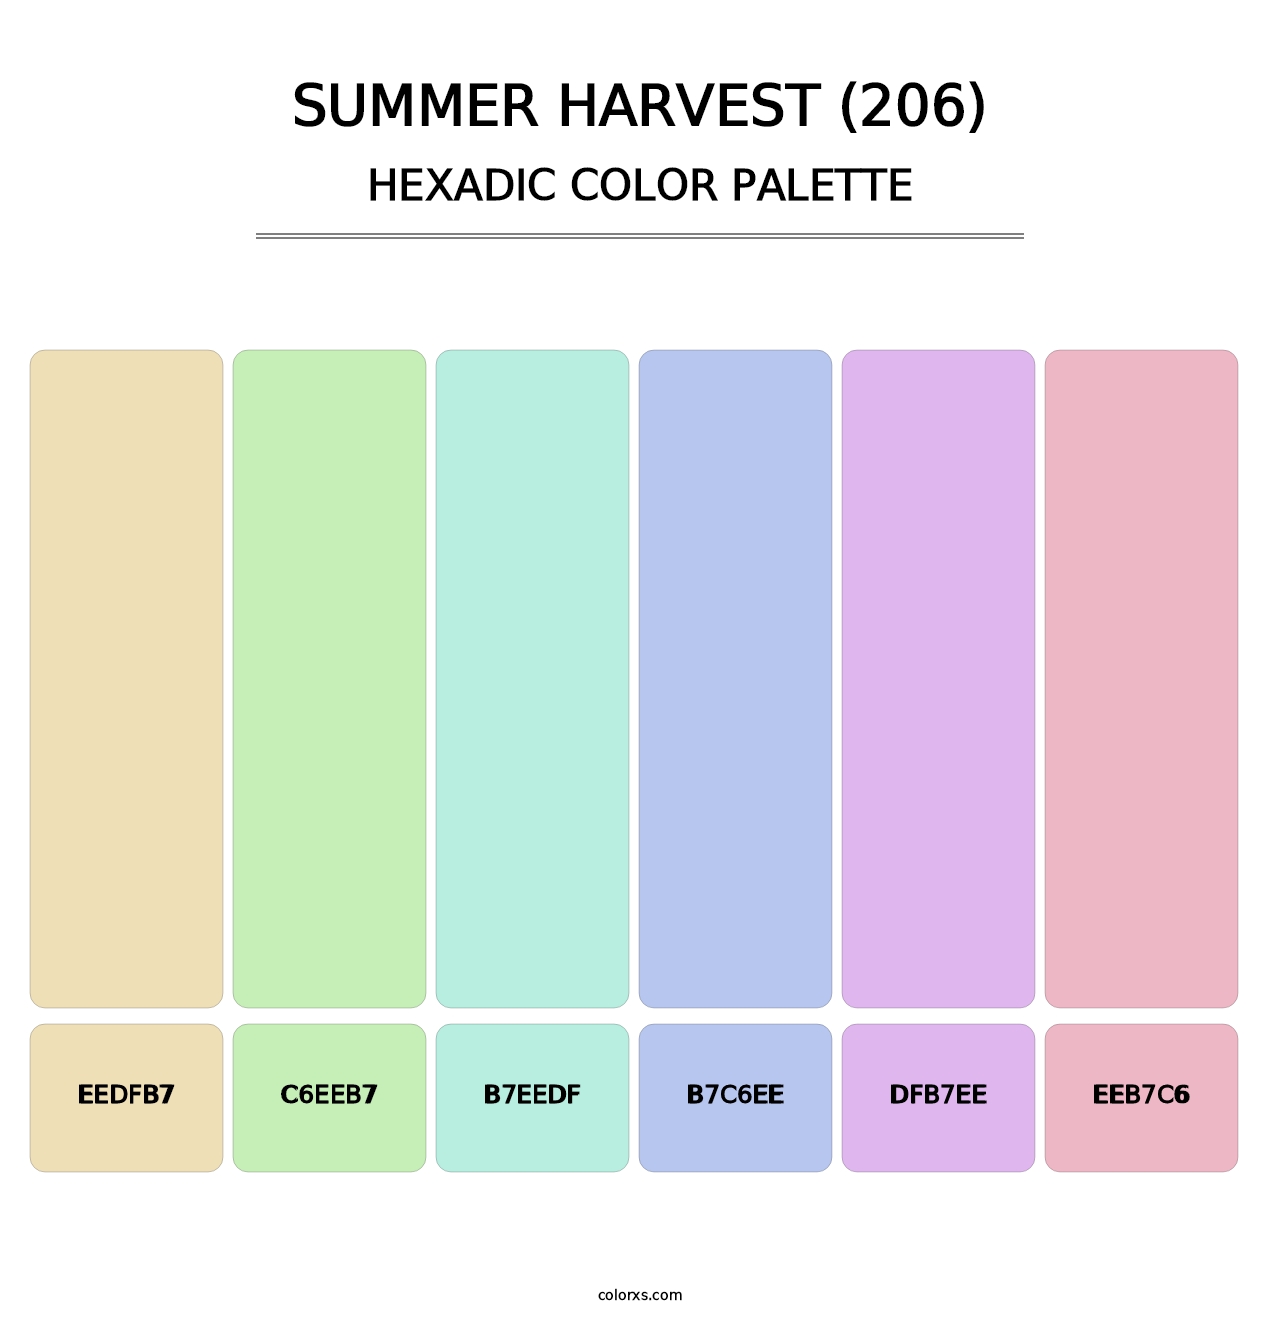 Summer Harvest (206) - Hexadic Color Palette